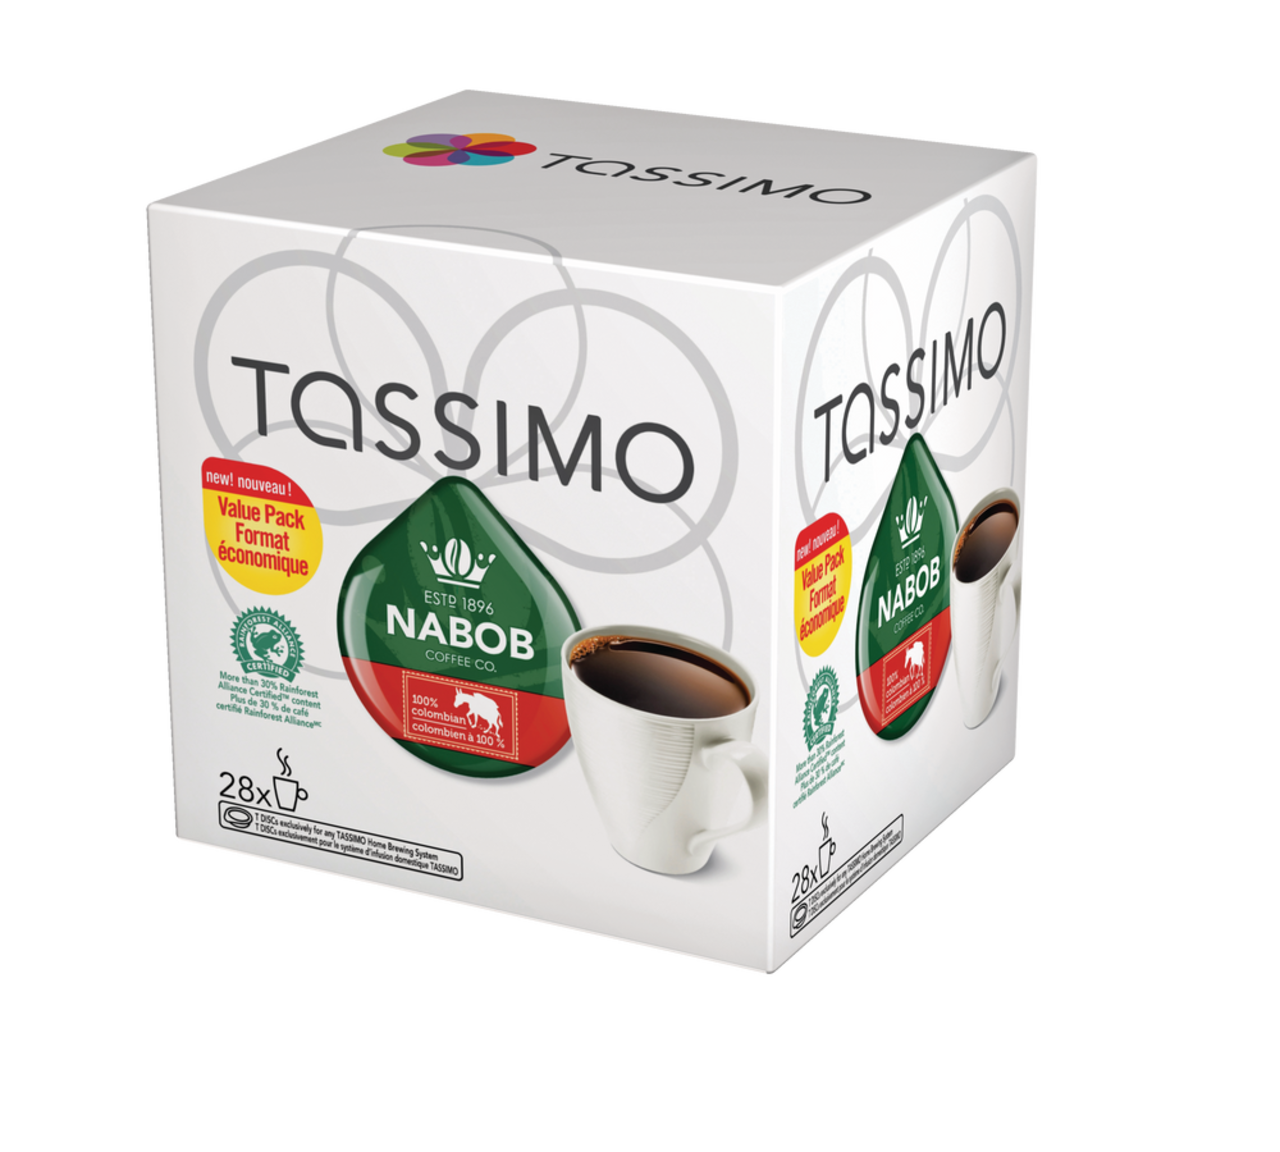 Café Dosettes Tassimo - Assortiment 5 variétés -Latte Macchiato